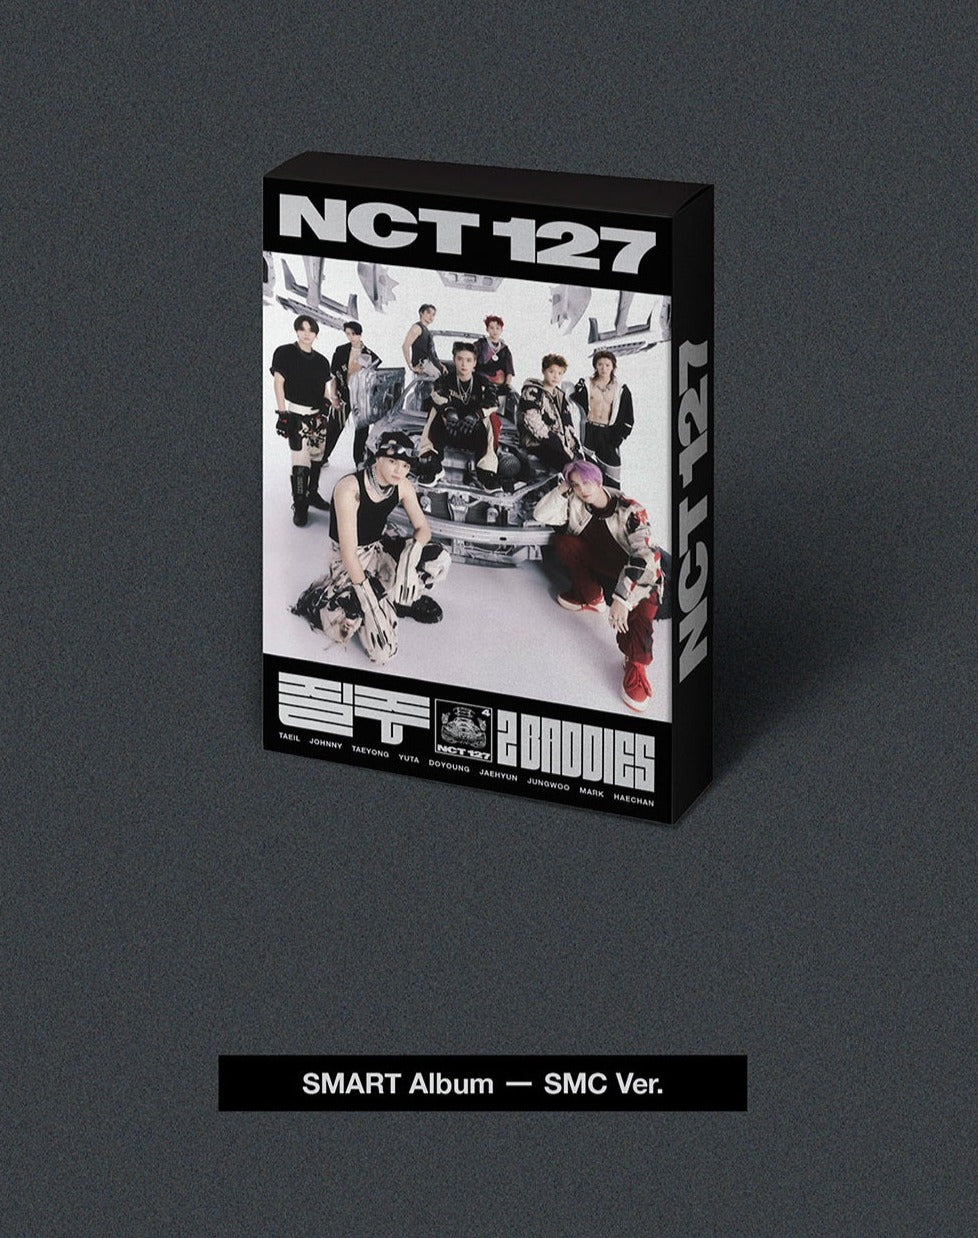 NCT 127 4th Album - 질주 (2 Baddies) (SMC Ver.)